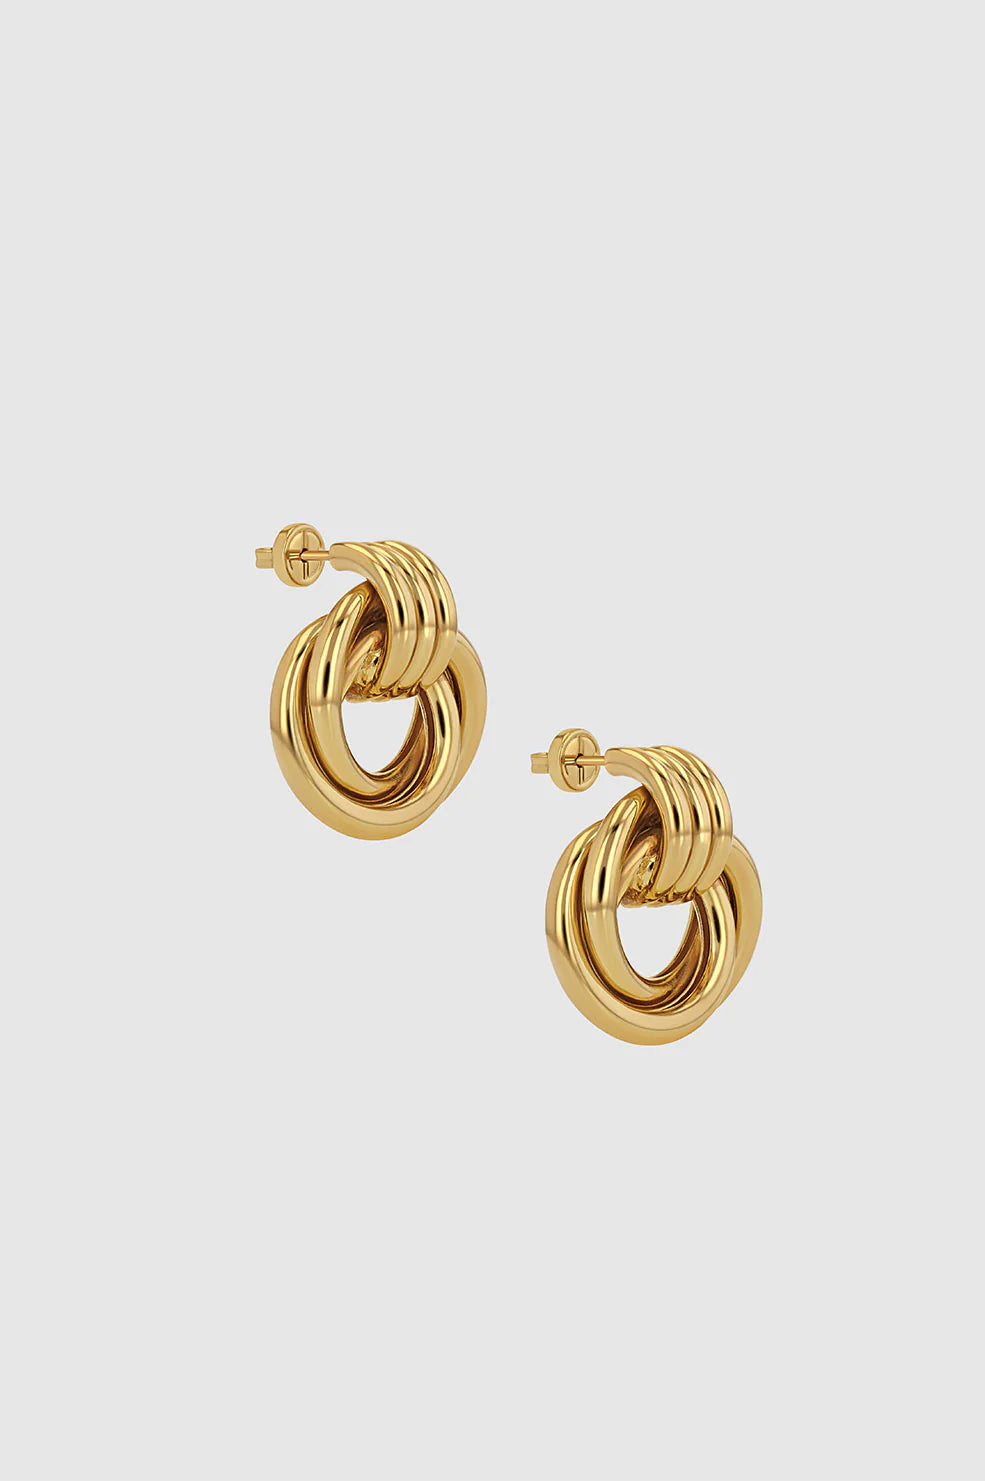 Triple Knot Earrings in Gold